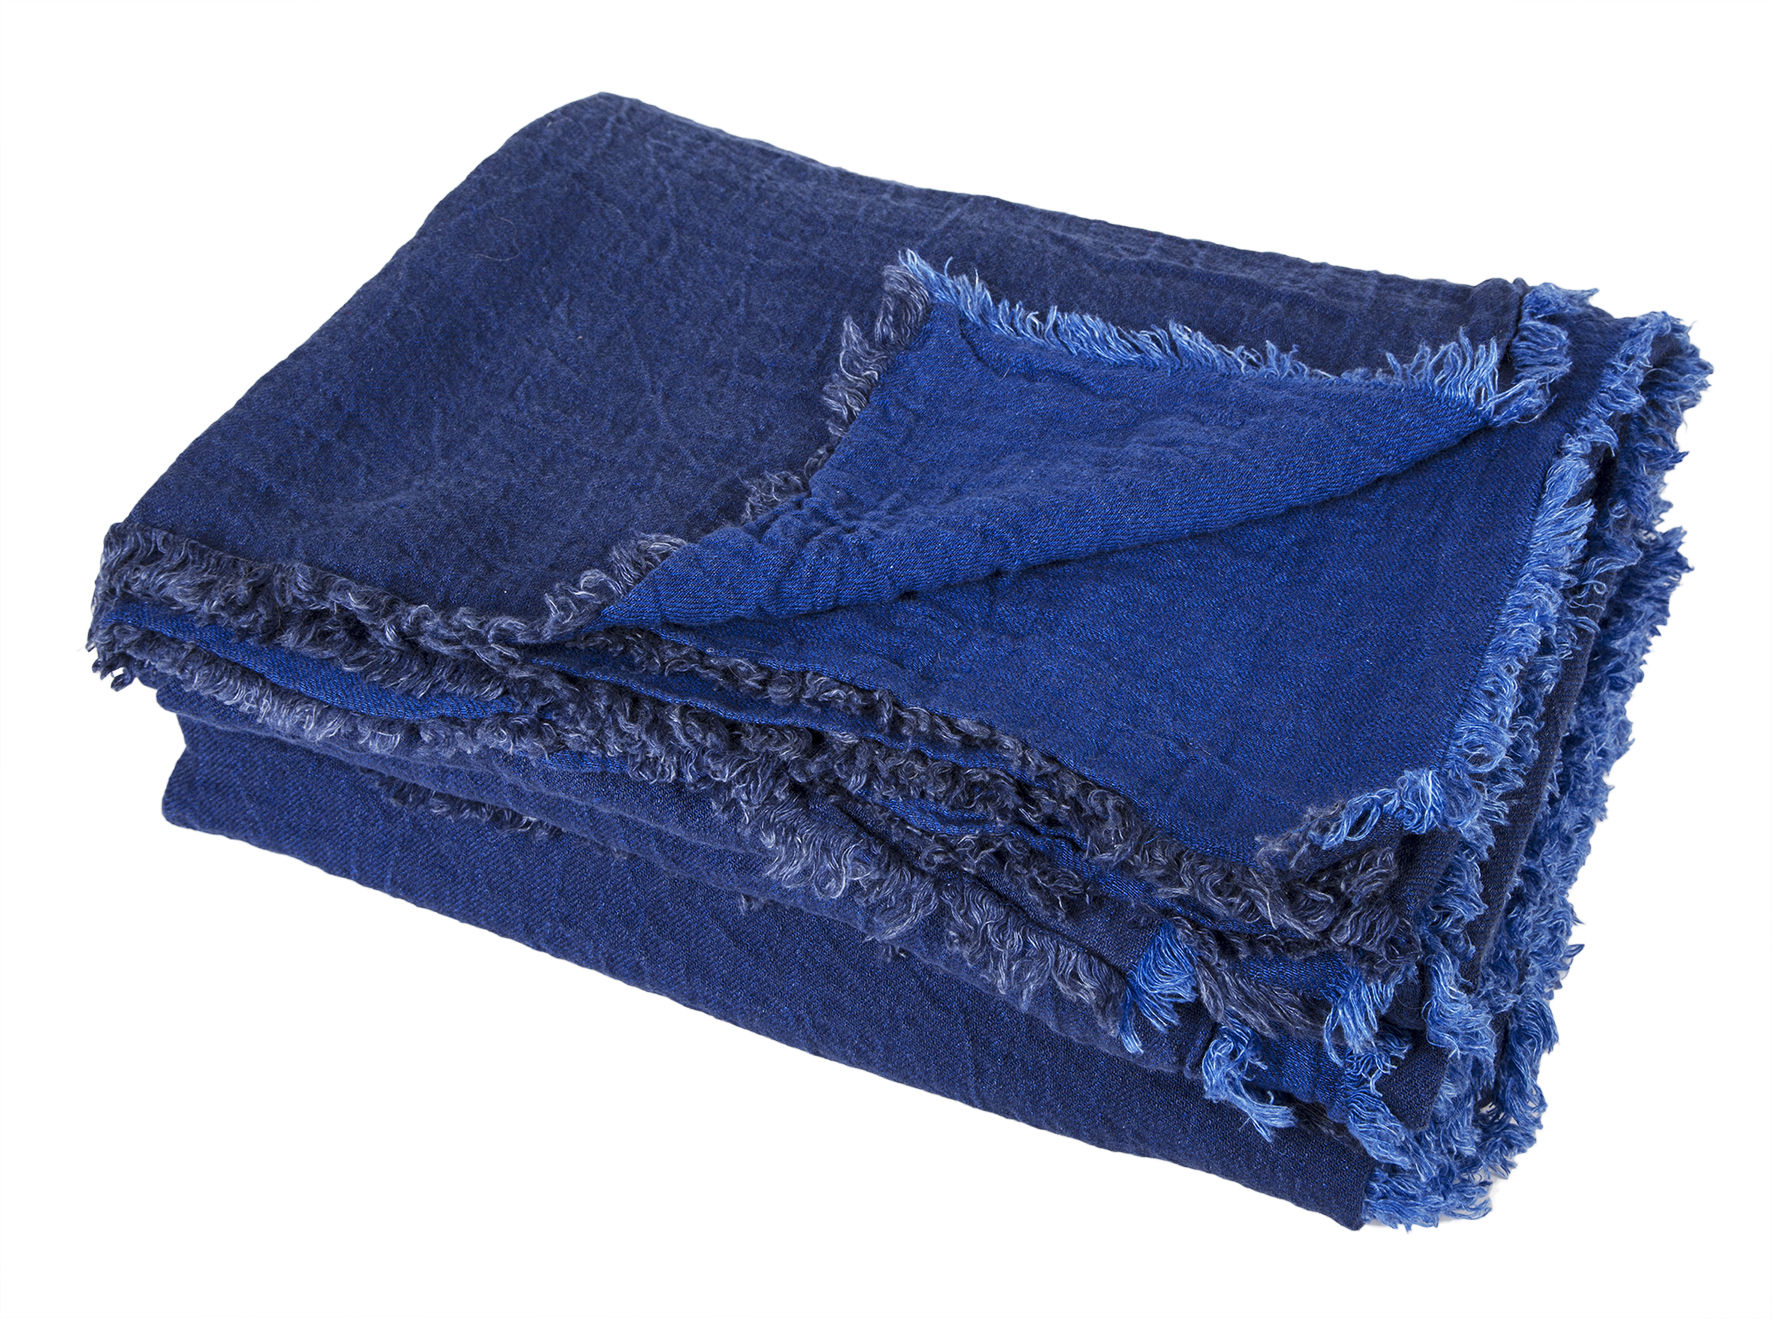 Vice Versa Blanket - 140 x 250 cm Cobalt blue by Maison de Vacances